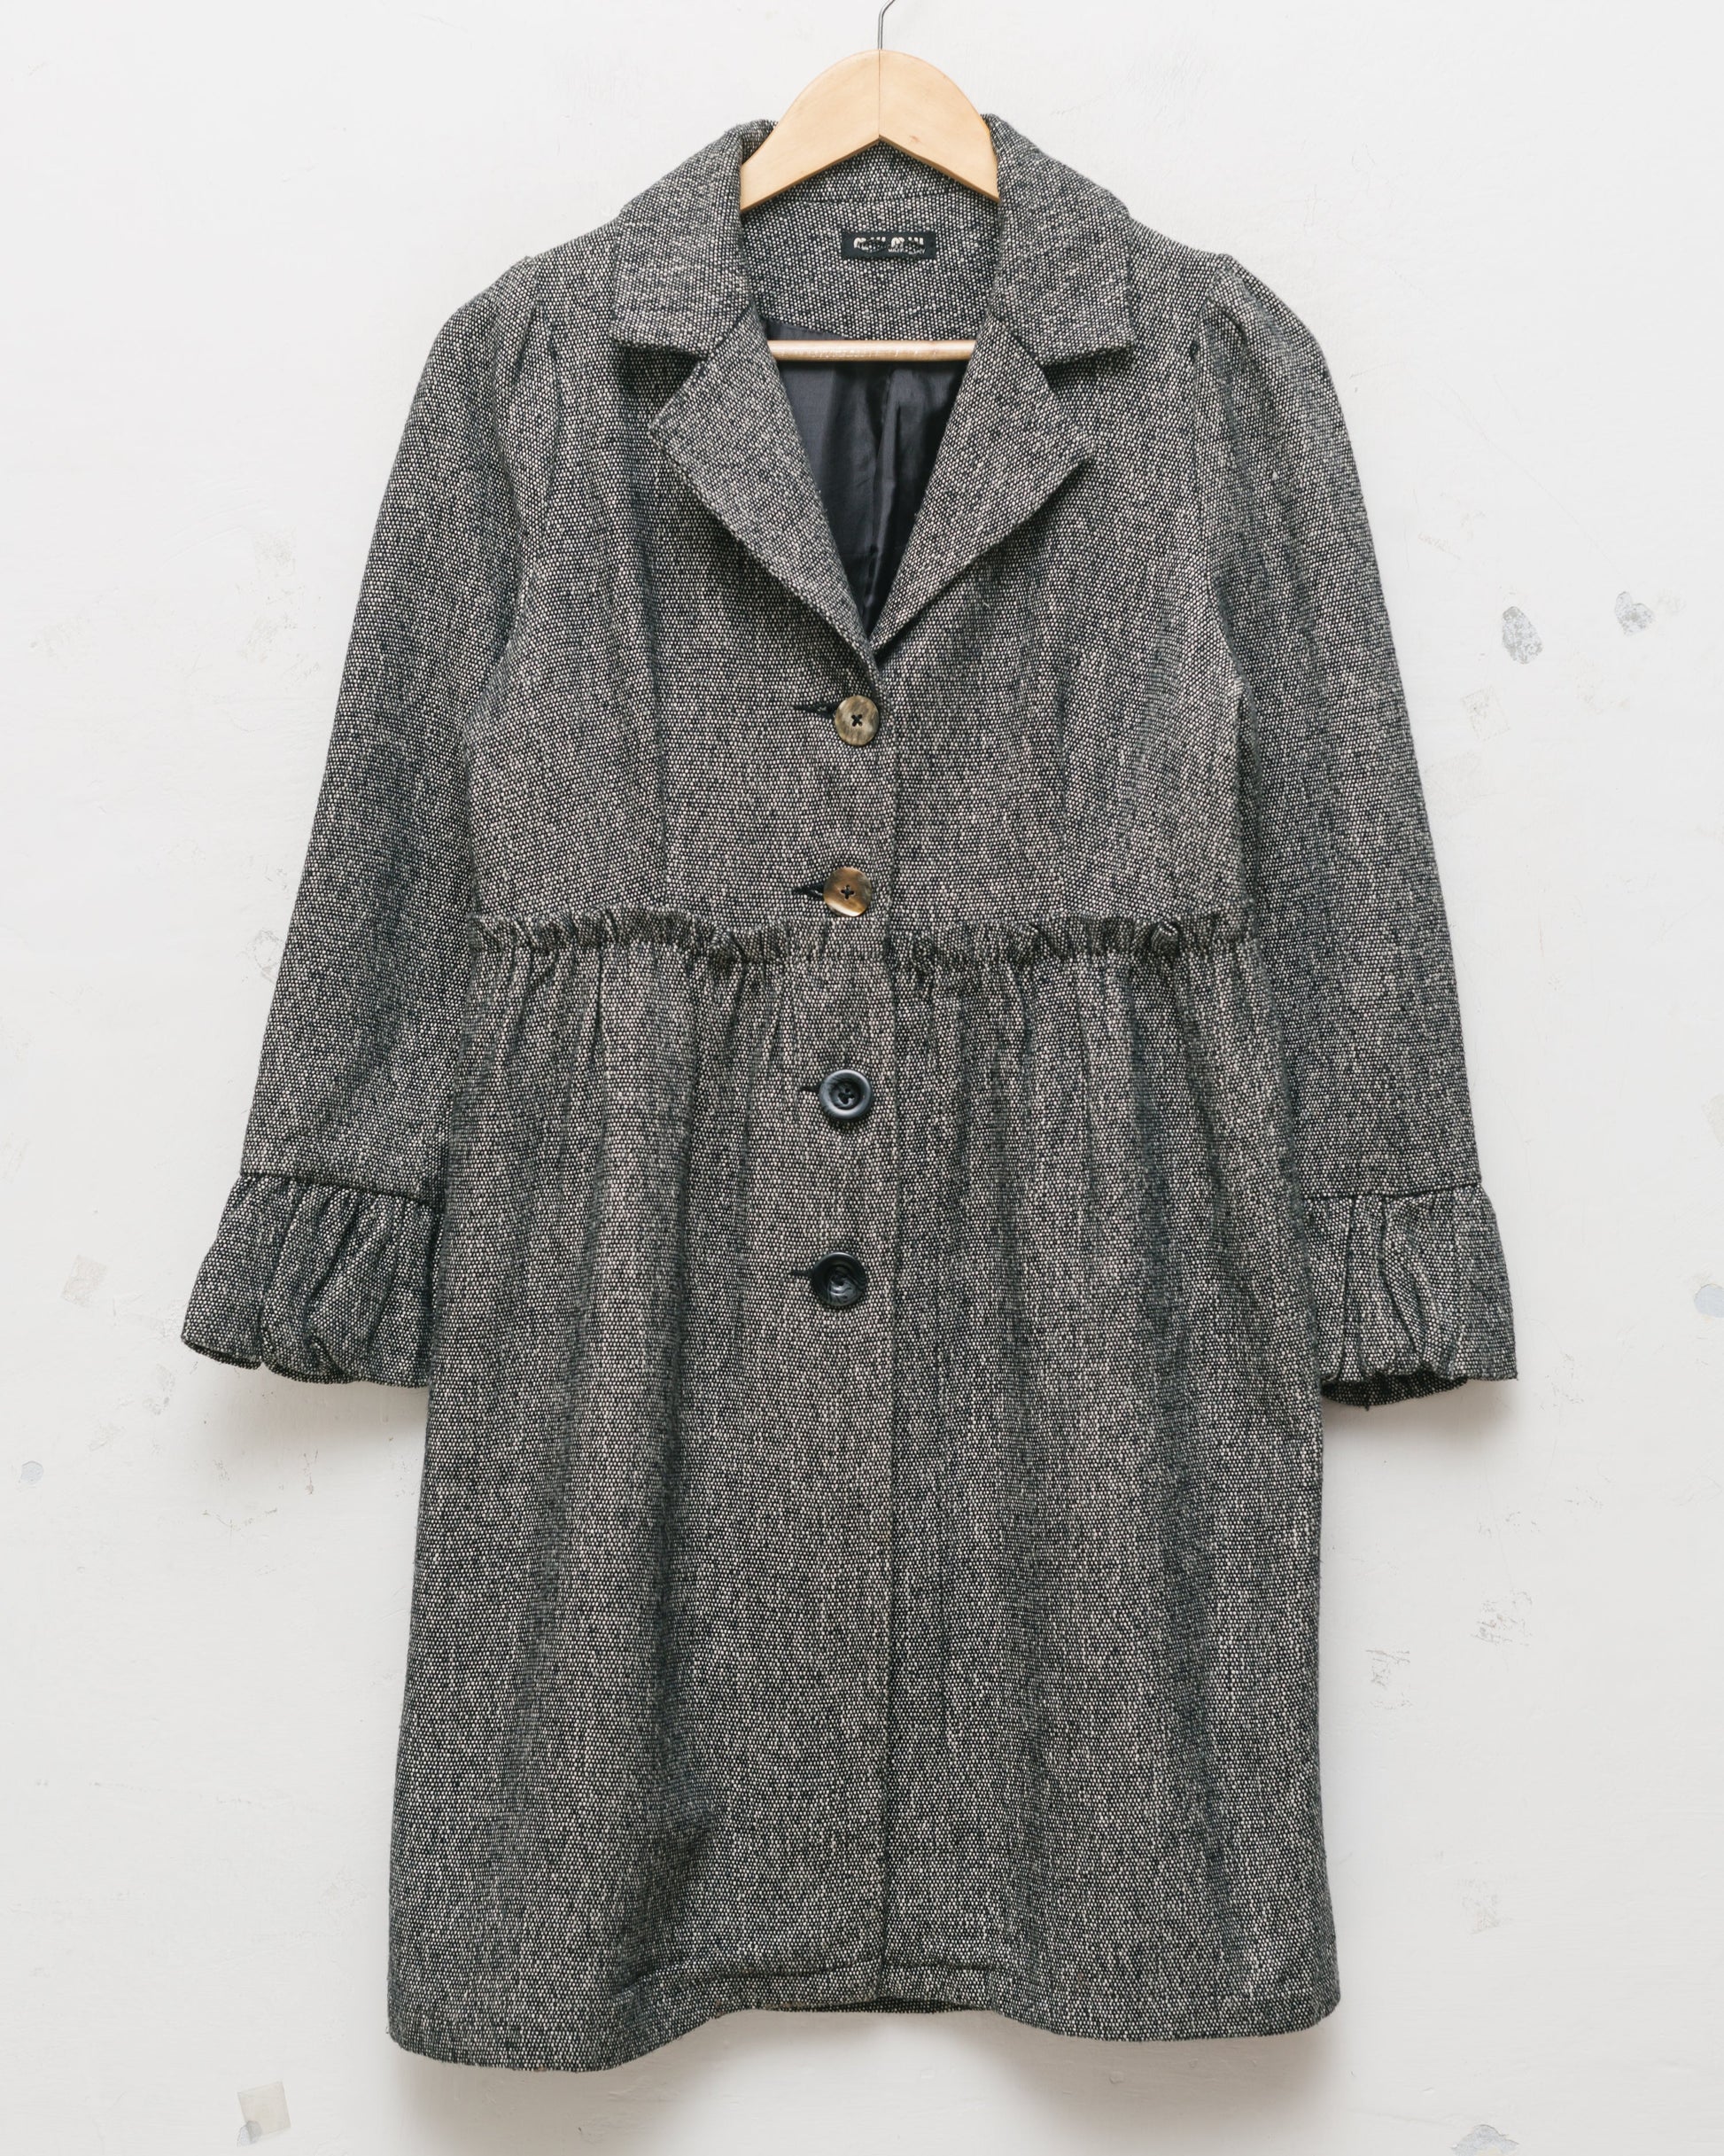 Miu textured cotton dress coat